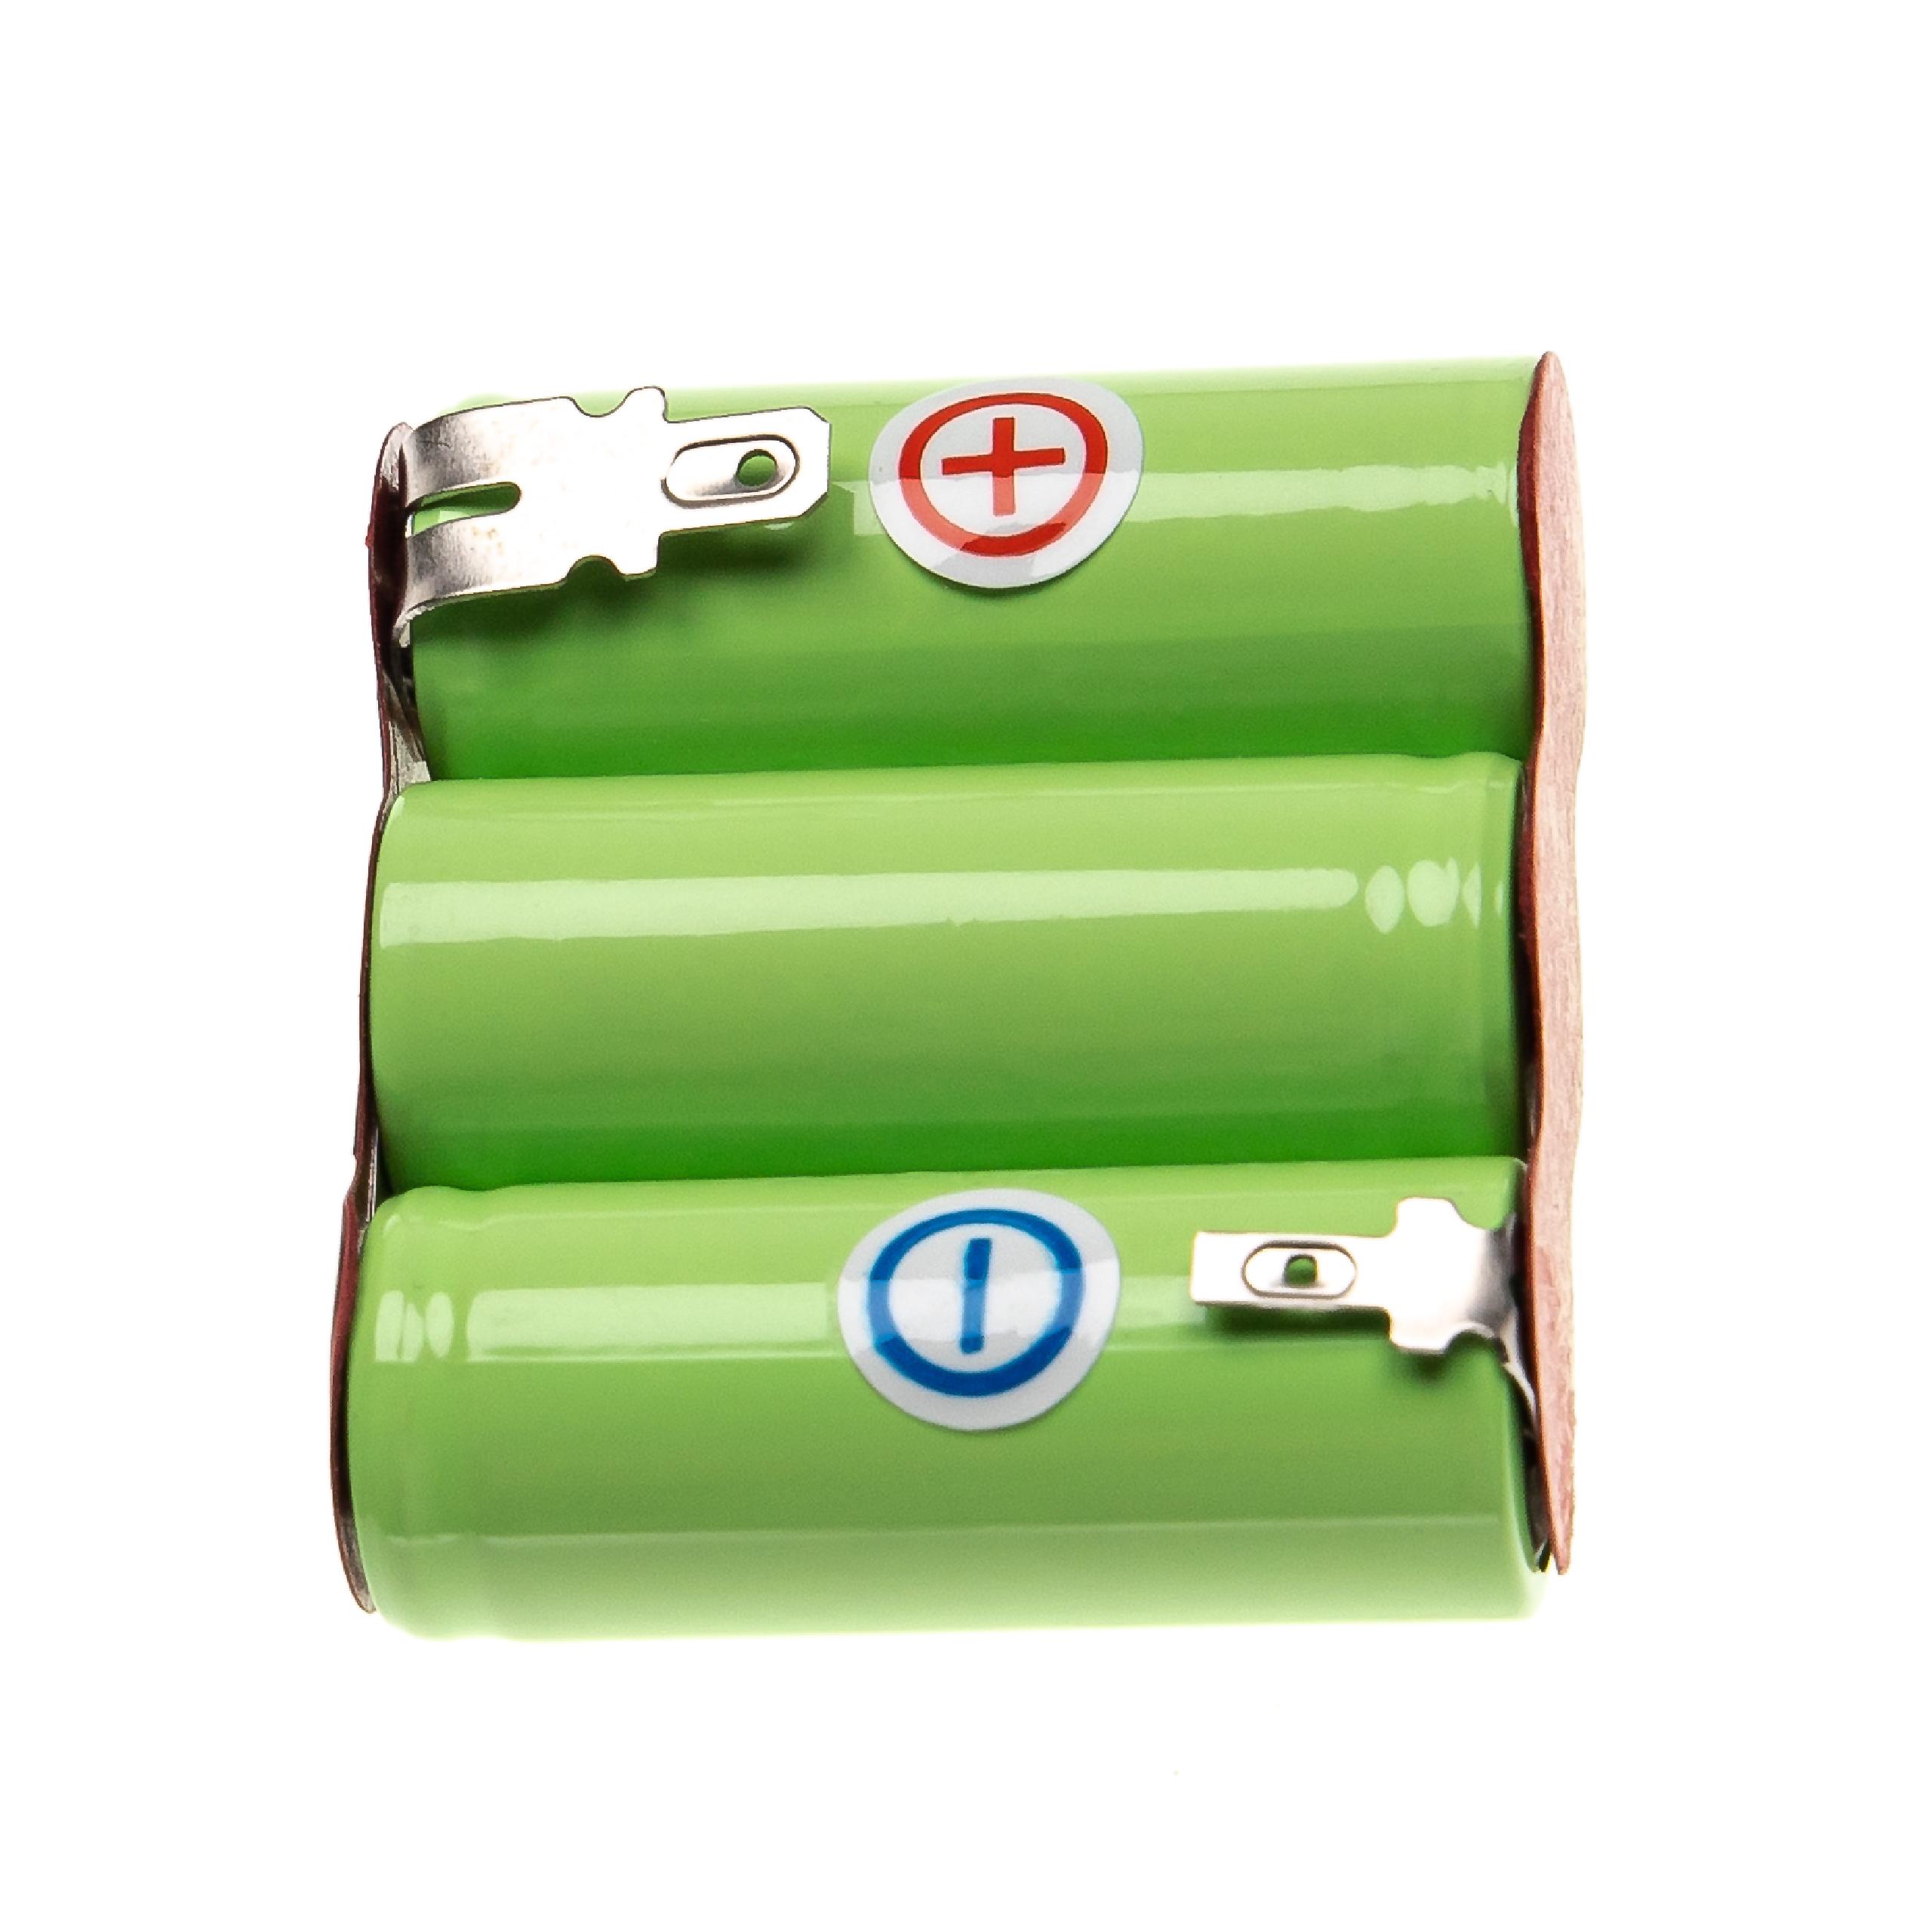 Batterie remplace Wolf Garten BS45, BF13806 801527, 70845 055 pour outil électrique - 2000 mAh, 3,6 V, NiMH